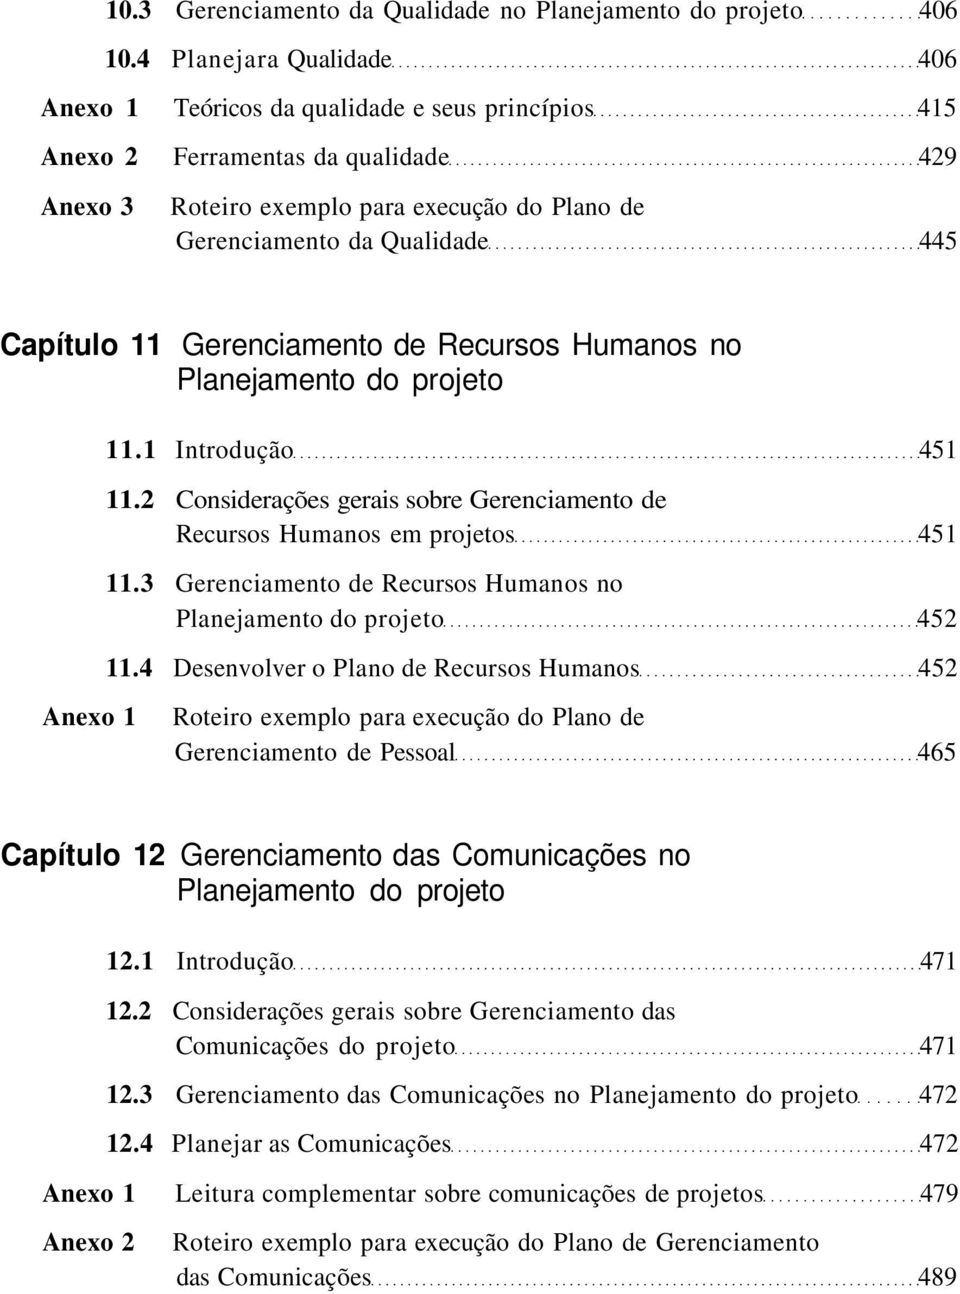 Capítulo 11 Gerenciamento de Recursos Humanos no Planejamento do projeto 11.1 Introdução 451 11.2 Considerações gerais sobre Gerenciamento de Recursos Humanos em projetos 451 11.